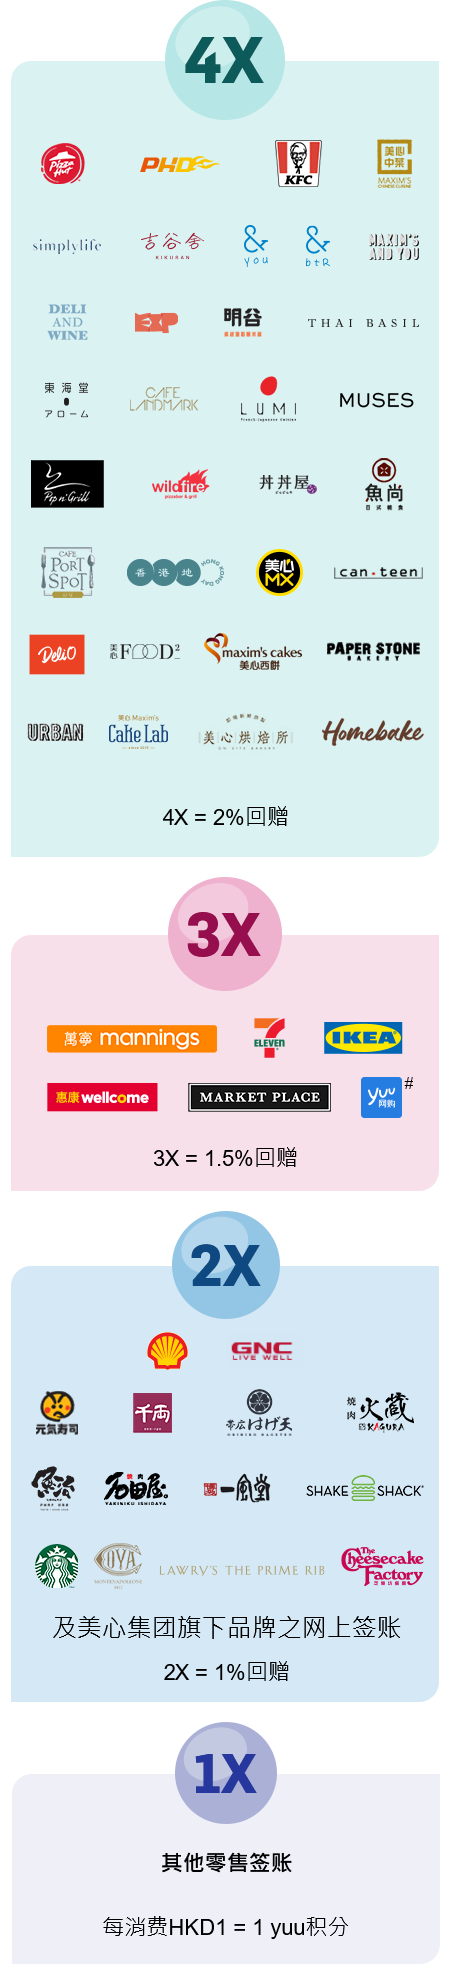 其他零售签账每消费 HK$1 = 1 yuu积分, 美心集团旗下其他品牌之食肆及分店 2X = 1%回赠, 3X = 1.5%回赠, 4X = 2%回赠